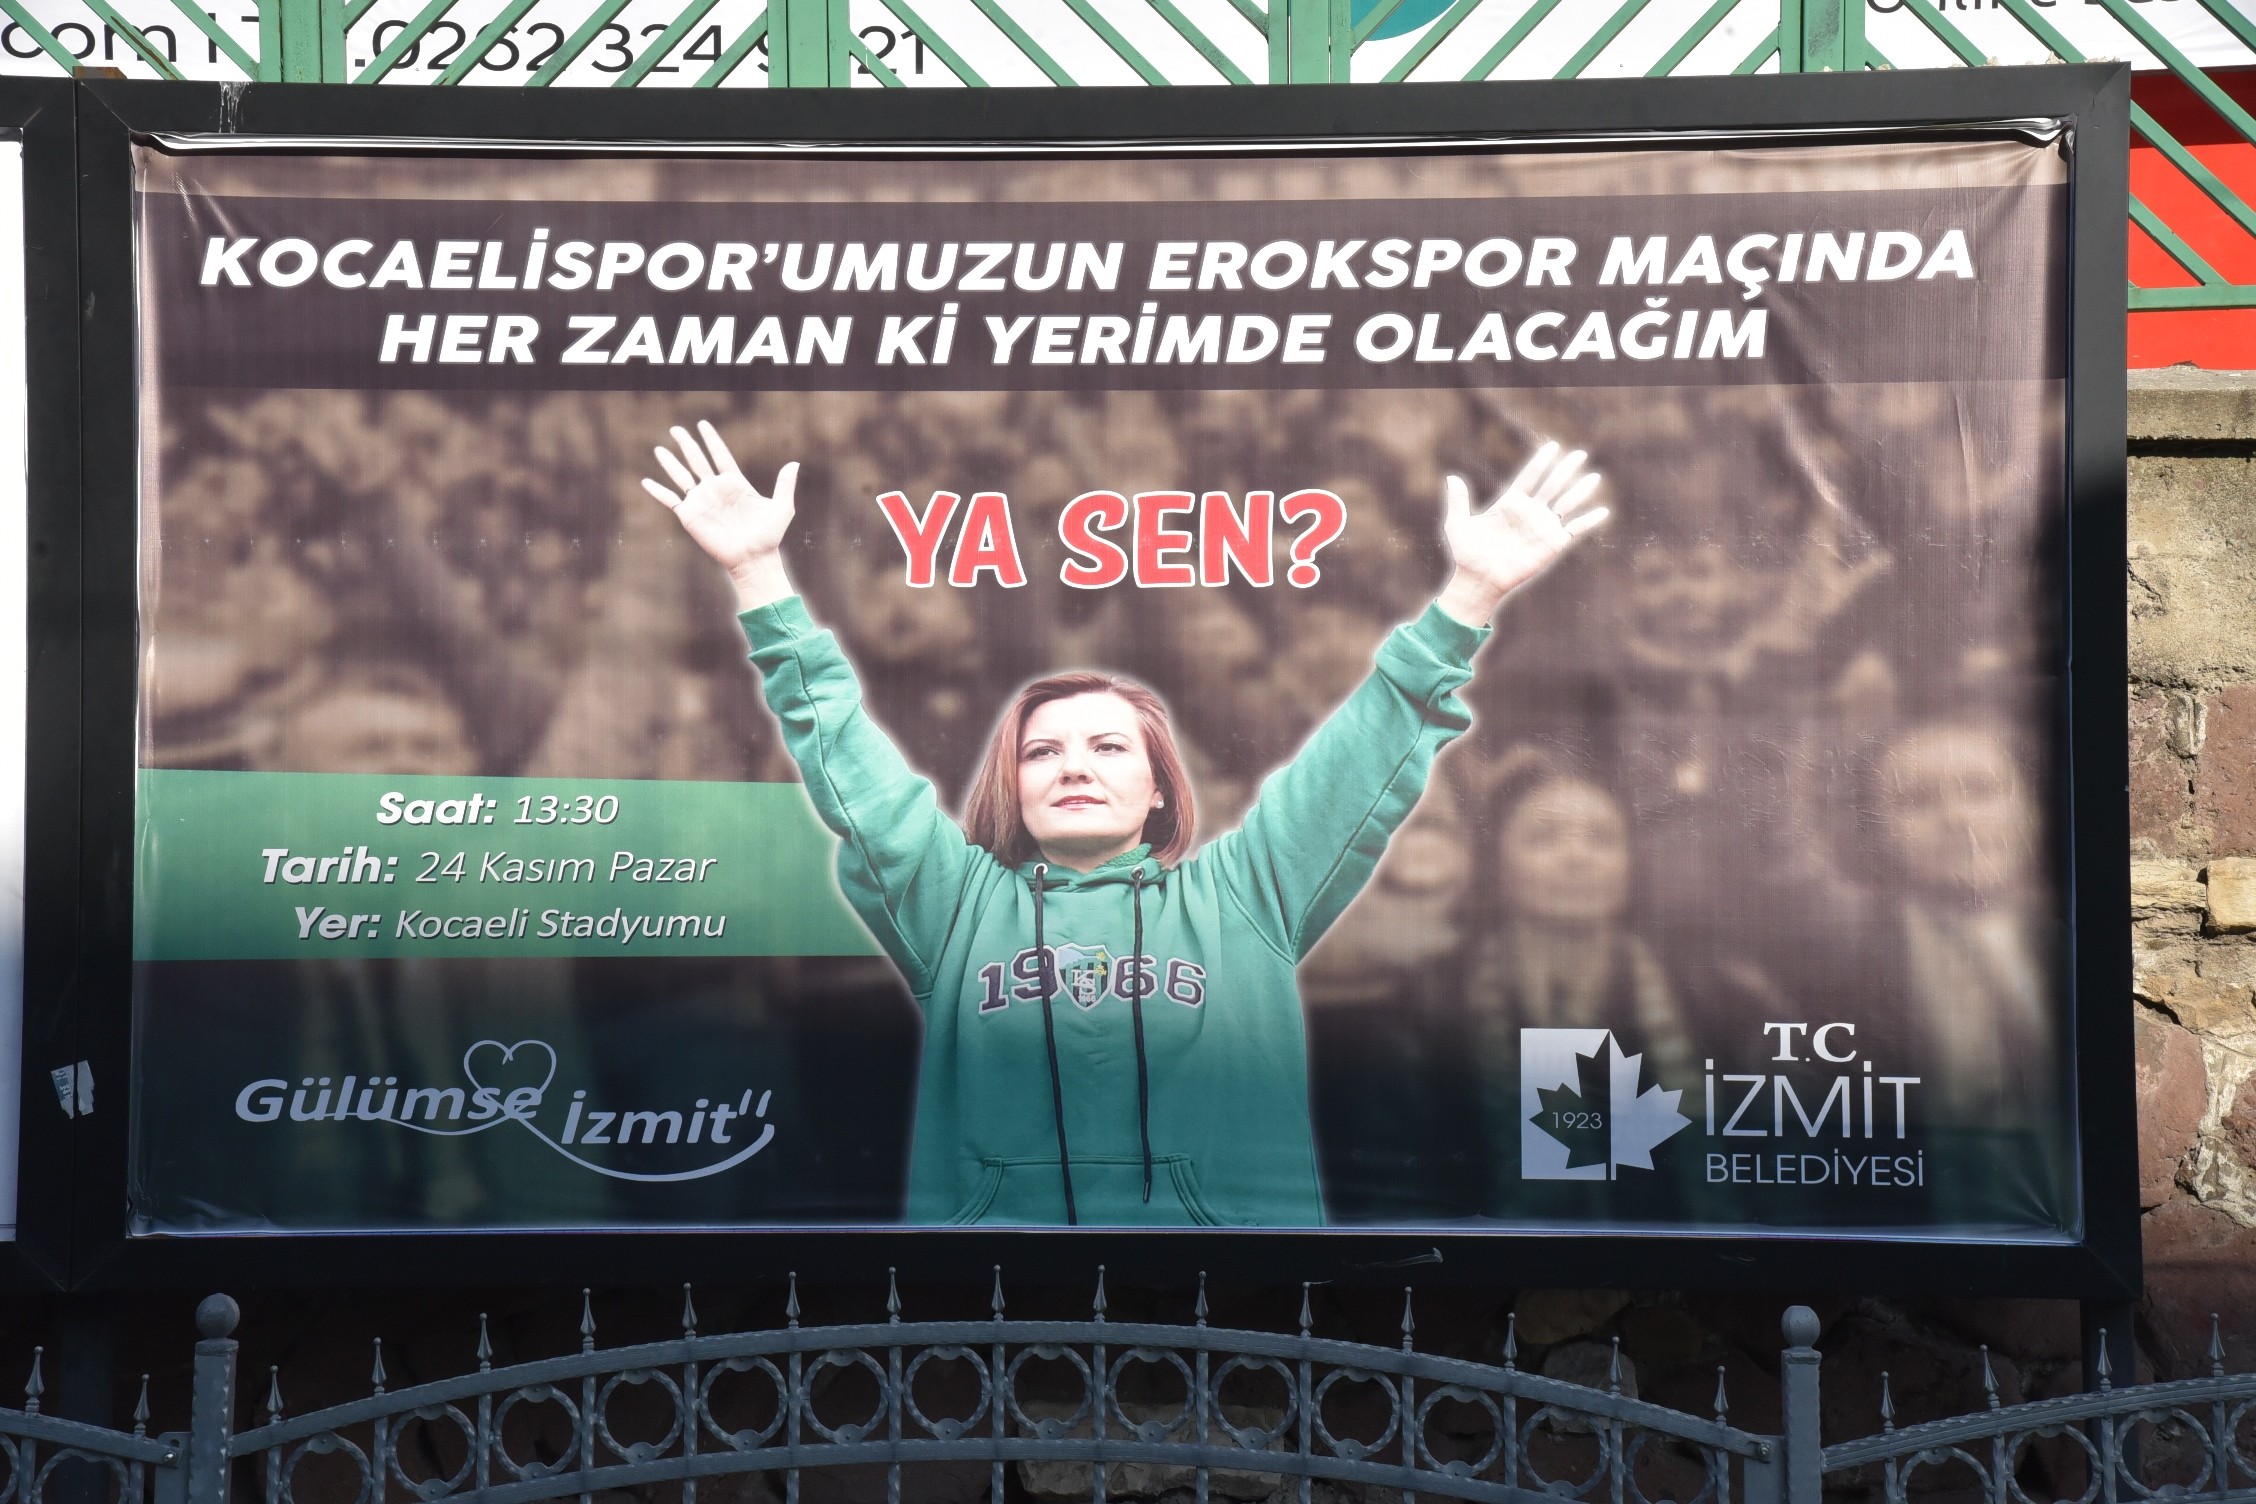 Başkan Hürriyet ”Kocaelisporumuz’un Erokspor maçında her zamanki yerimde olacağım. Ya siz”